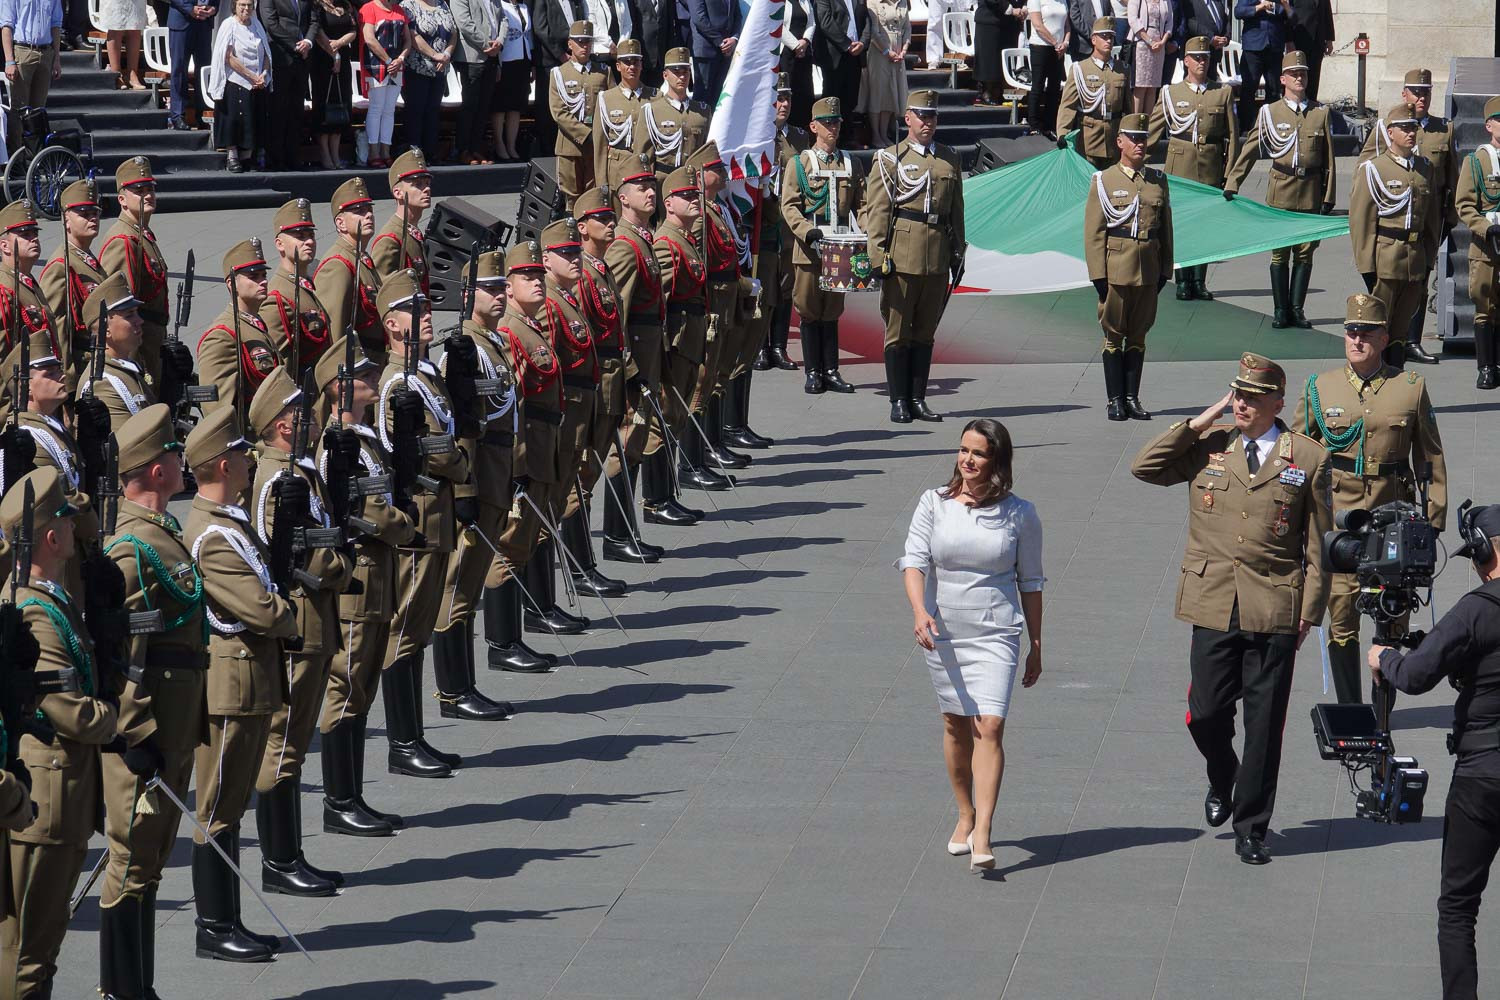 Katonák tisztelegnek Novák Katalinnak a köztársasági elnök beiktatási ceremóniáján a budapesti Kossuth téren (A képre kattintva vagy pöccintéssel lapozhatók a galéria fotói)